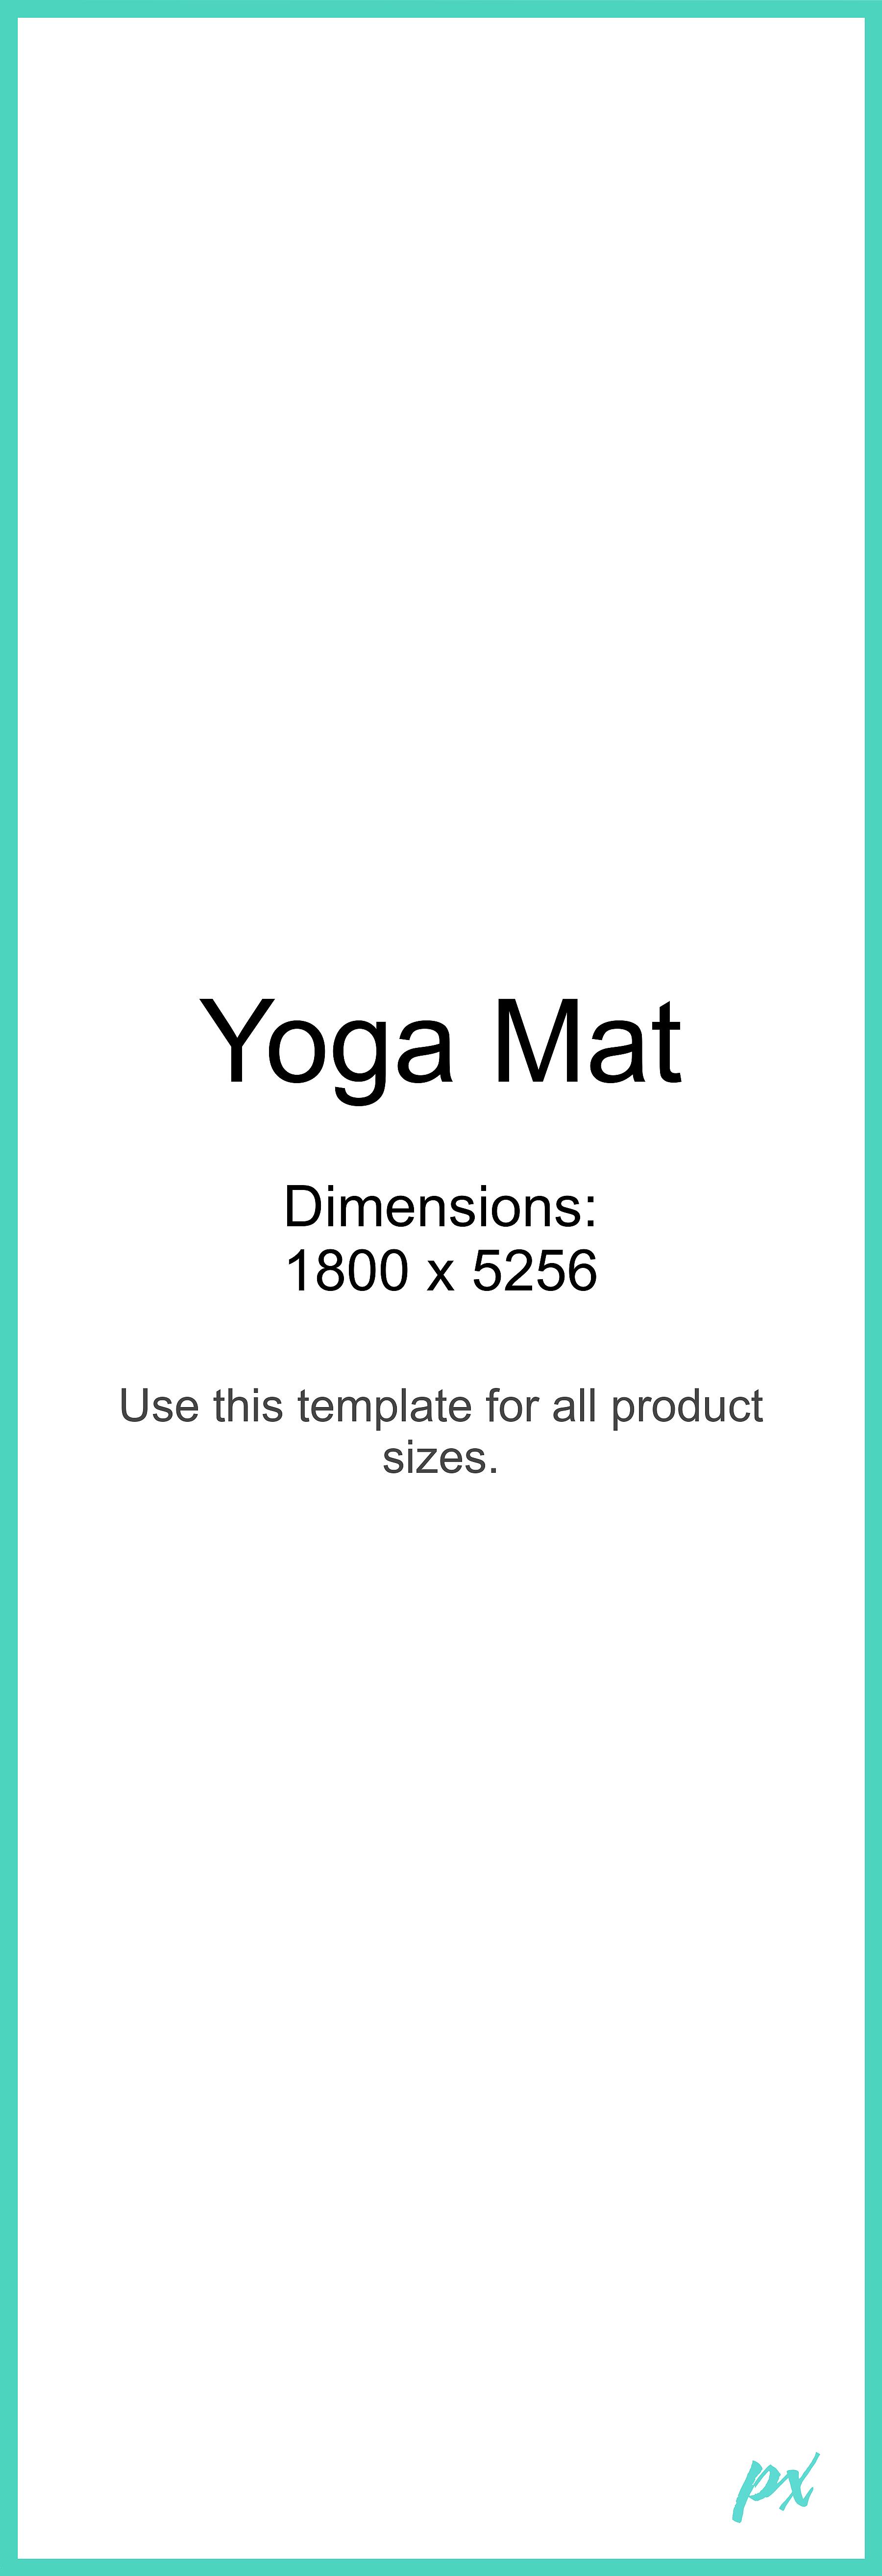 custom yoga mats uk